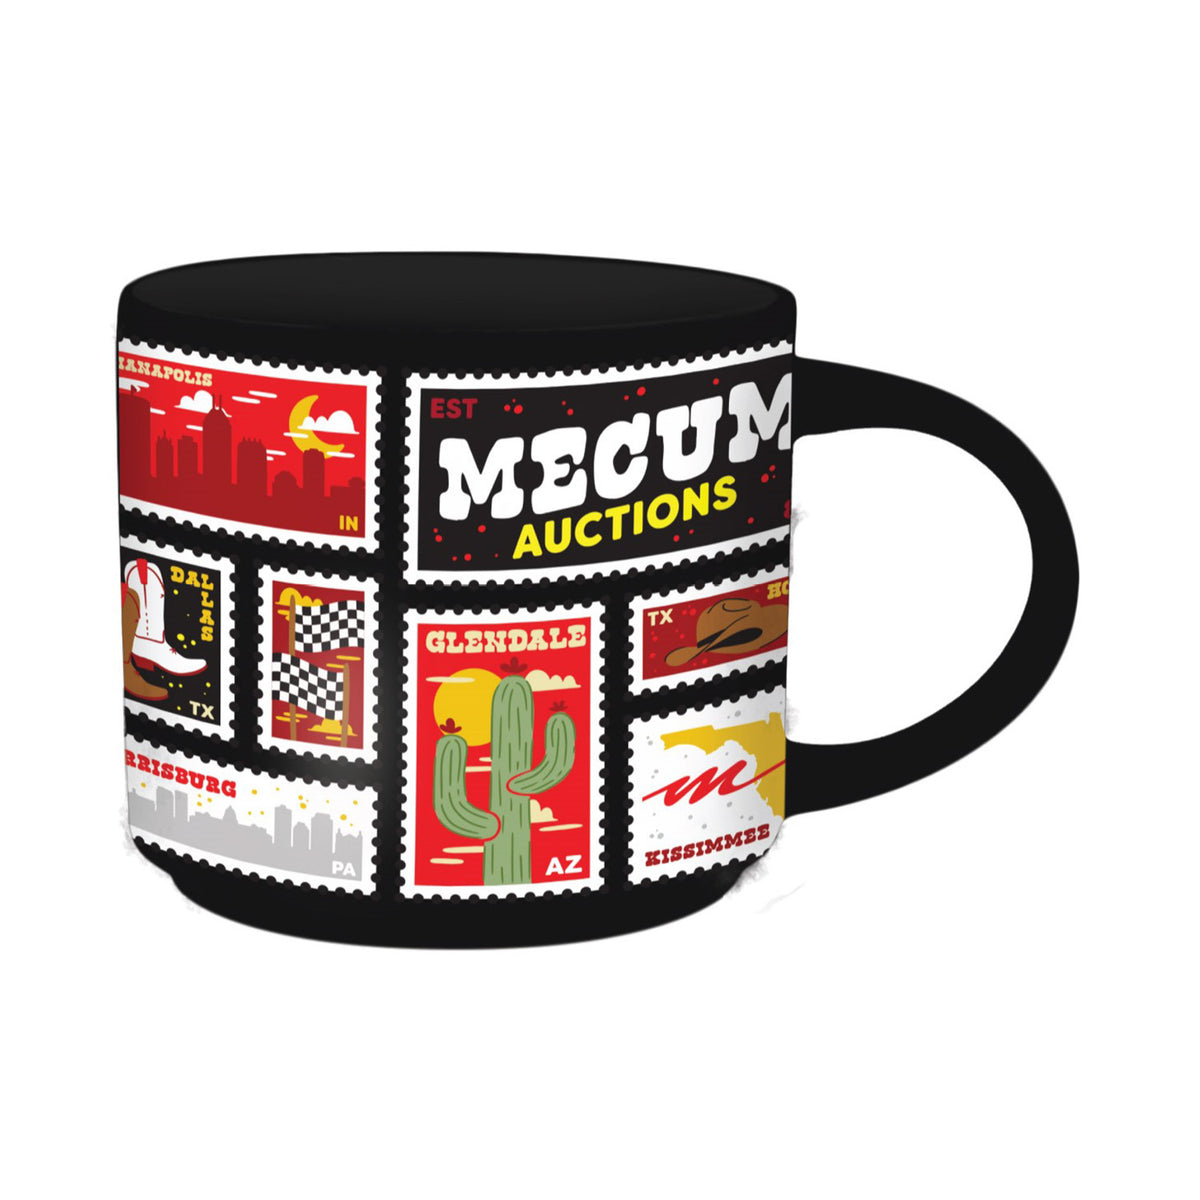 Mecum Auction Black Tour Mug - Front View